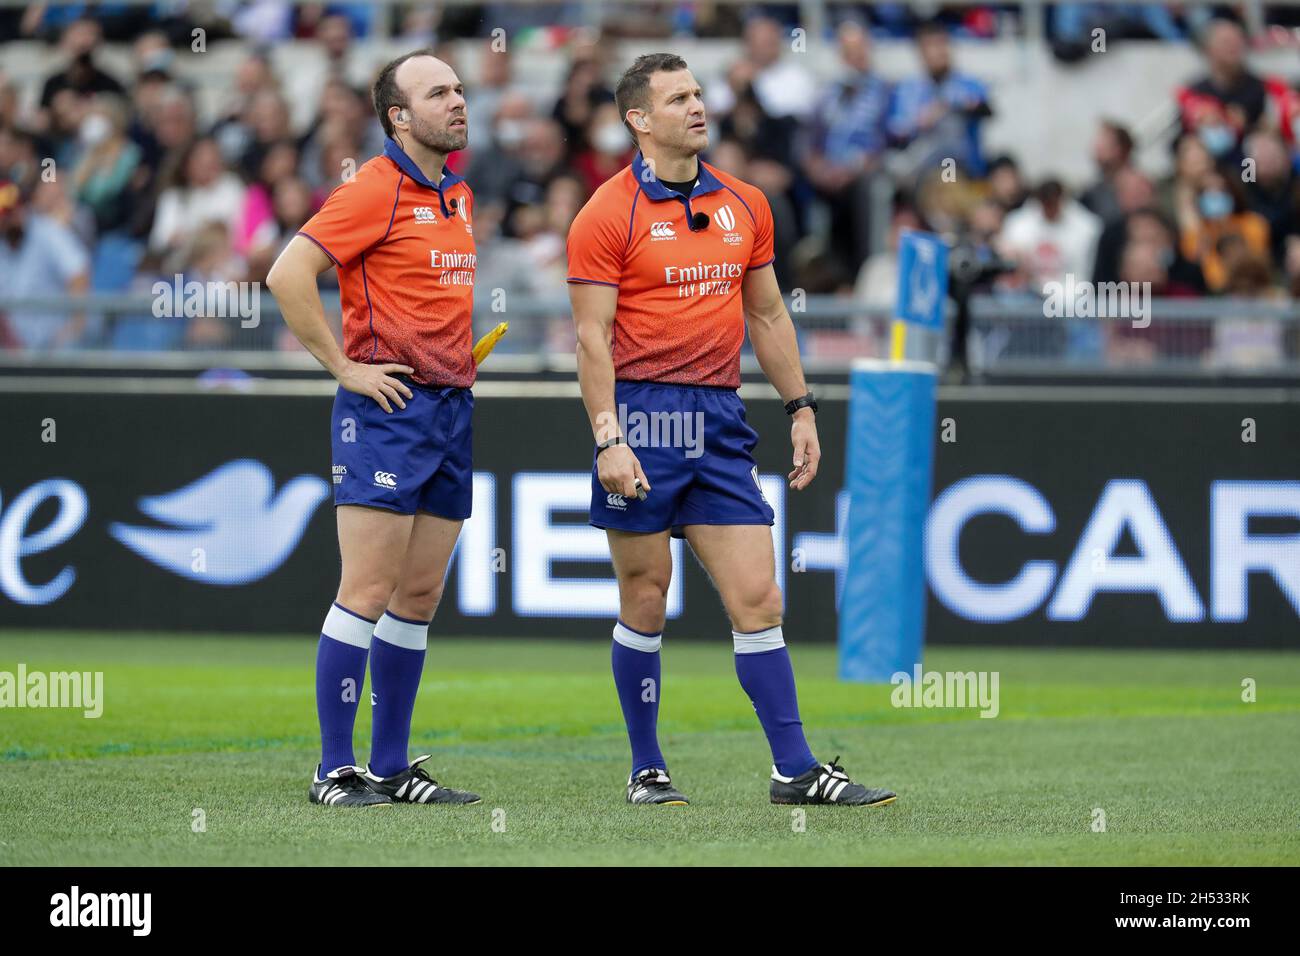 Rugby referee immagini e fotografie stock ad alta risoluzione - Alamy